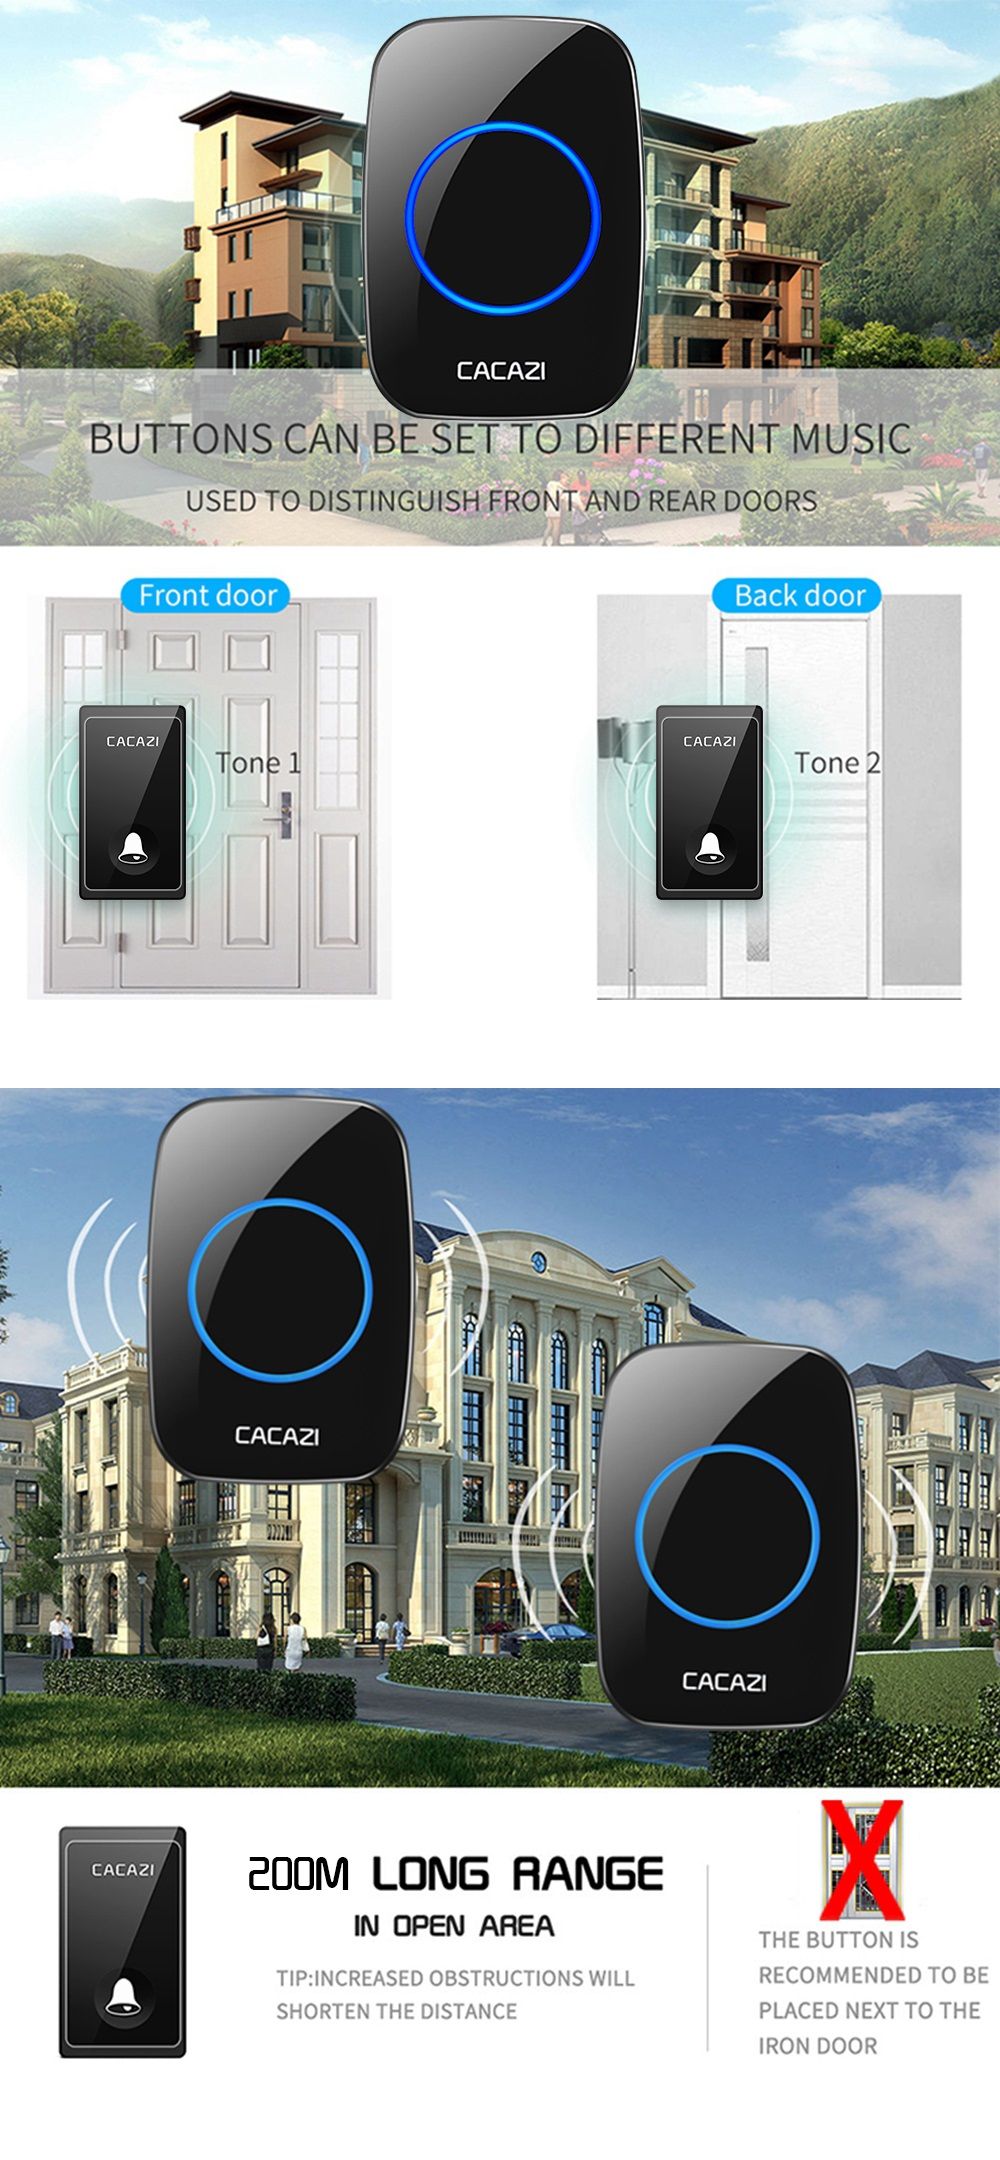 CACAZI-FA60-Wireless-Doorbell-Self-powered-Waterproof-Intelligent-Home-Door-Ring-Bell-3Pcs-Receivers-1618326